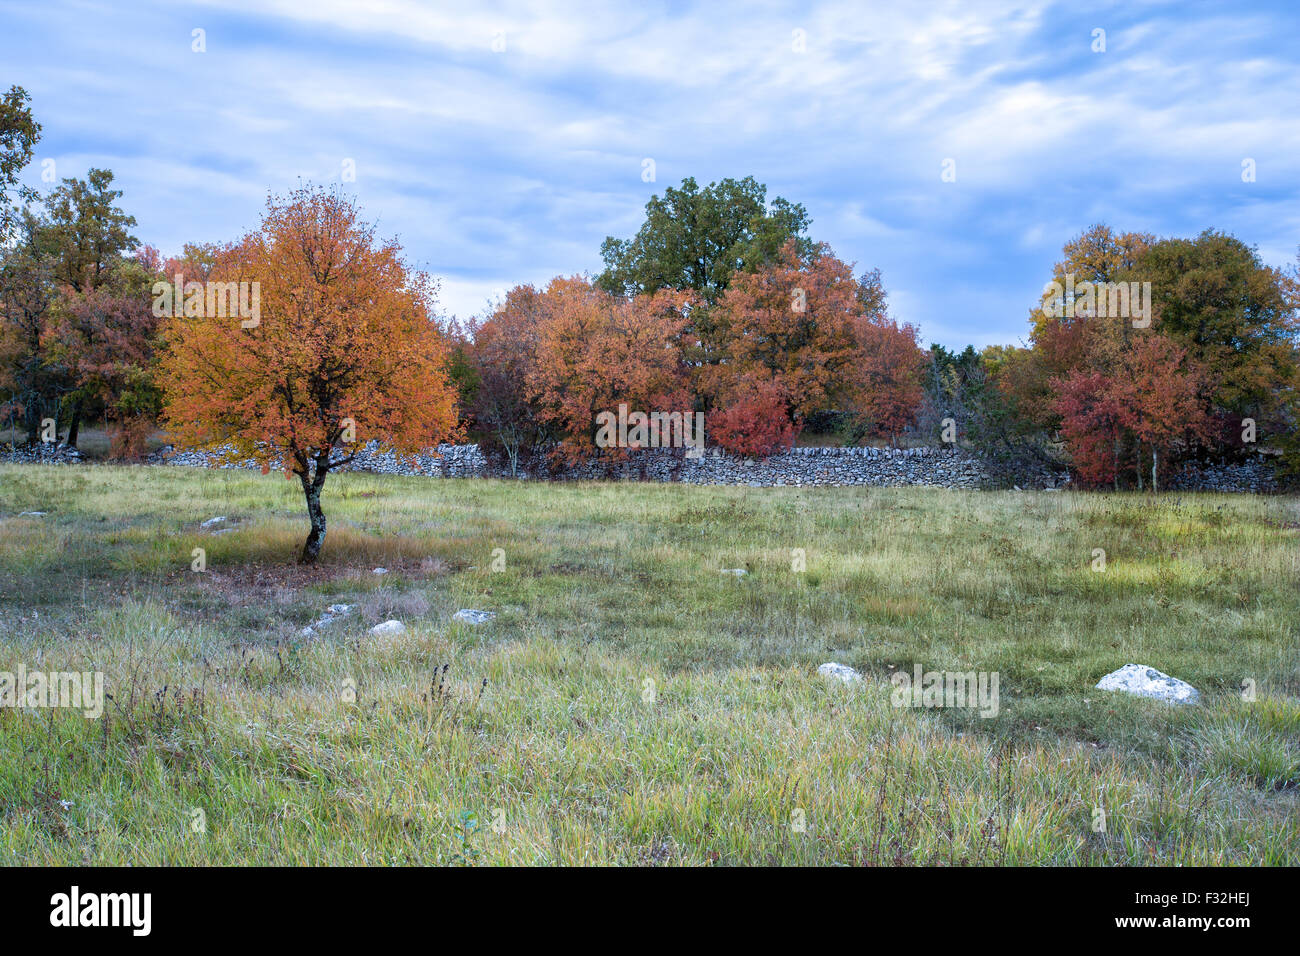 Les arbres aux couleurs automnales, dans un champ, Dordogne, France Banque D'Images